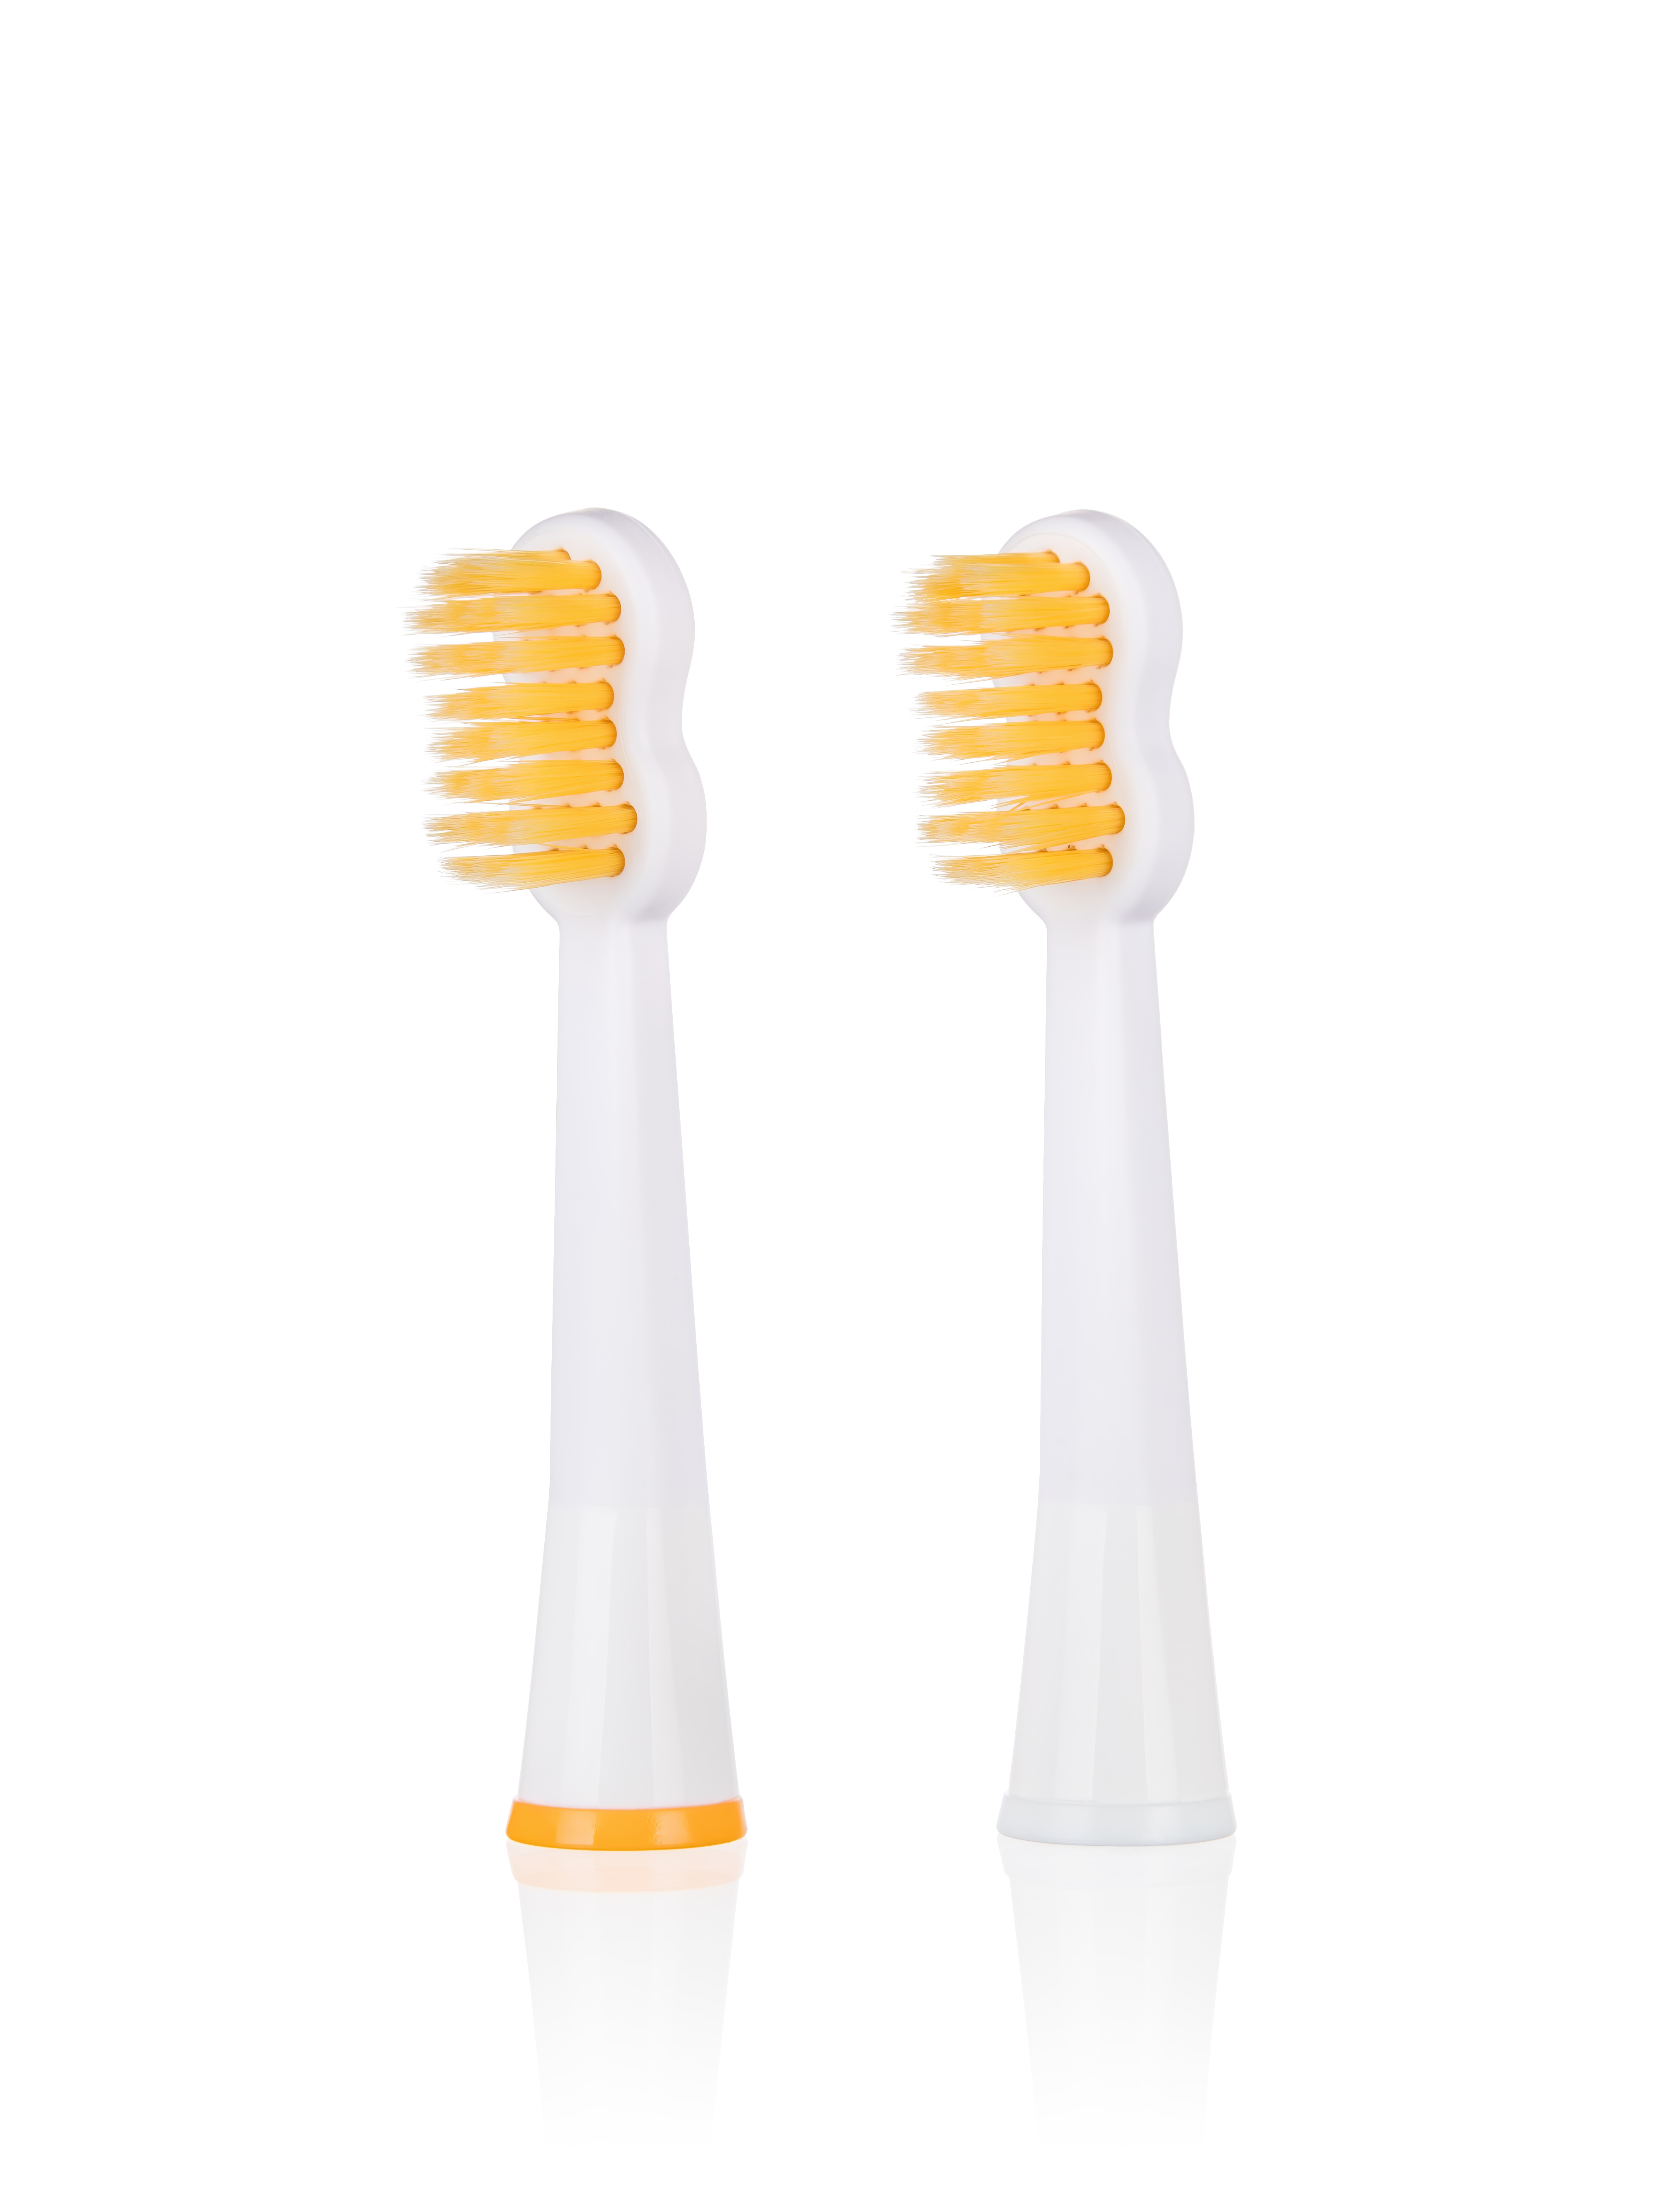 Ultra soft brush heads for edel white sonic toothbrush